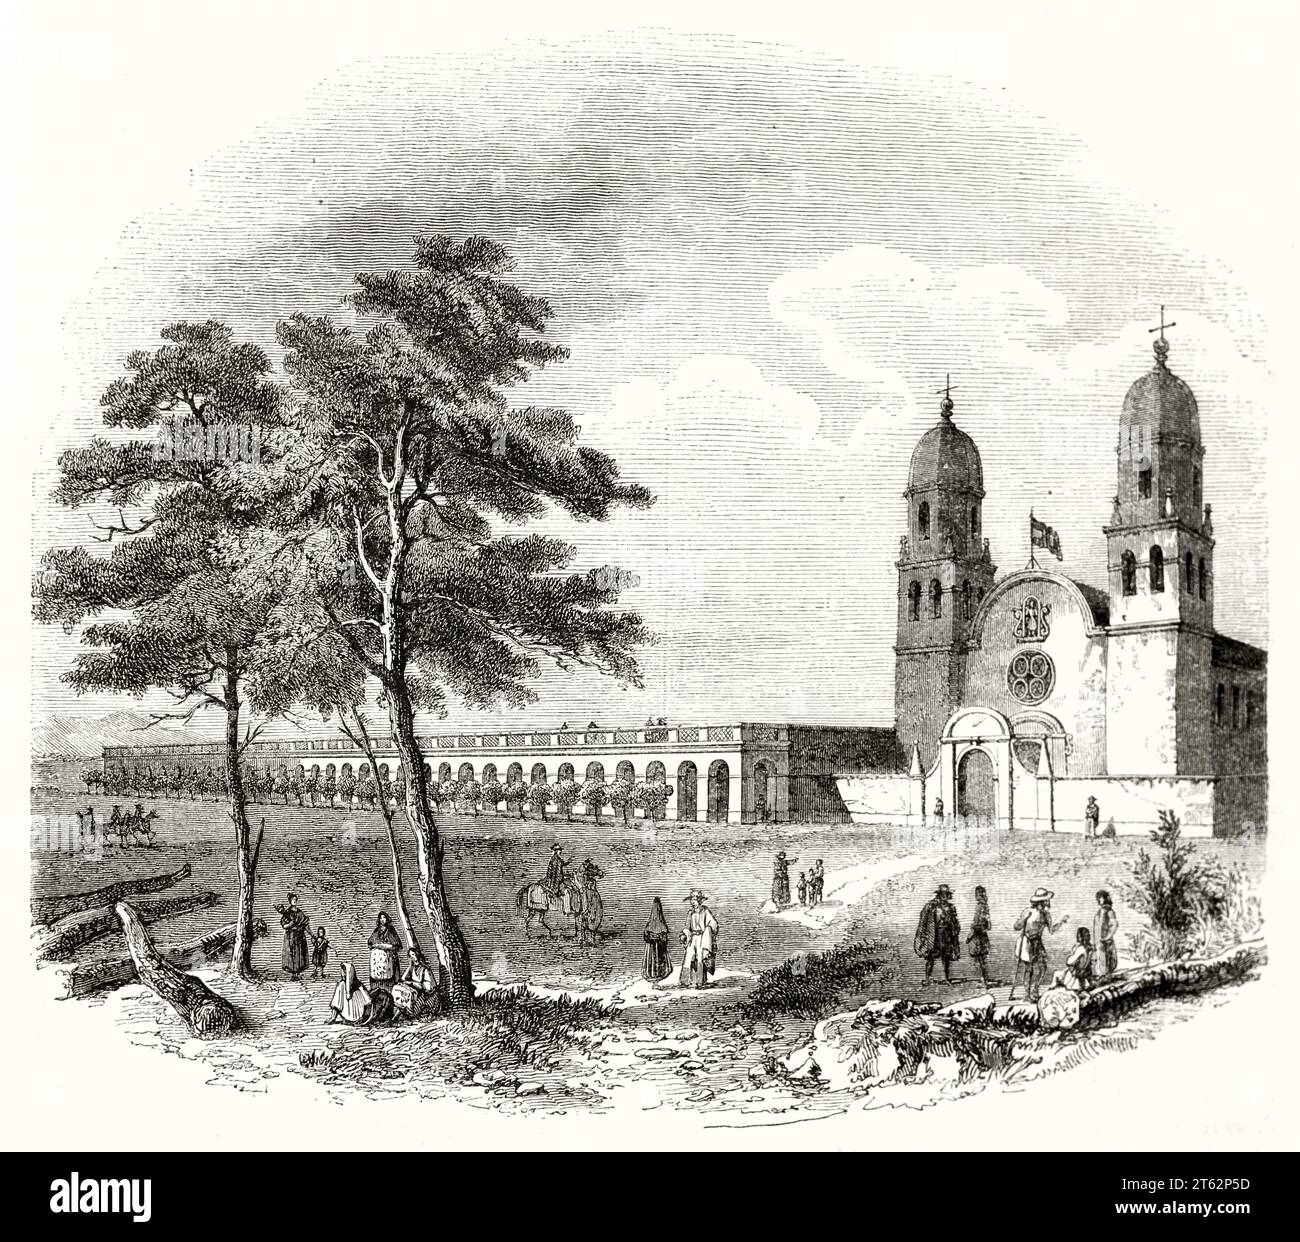 Alte Sicht auf Saint-Louis Mission, Kalifornien. Von Mofras, publ. Auf Magasin Pittoresque, Paris, 1849 Stockfoto